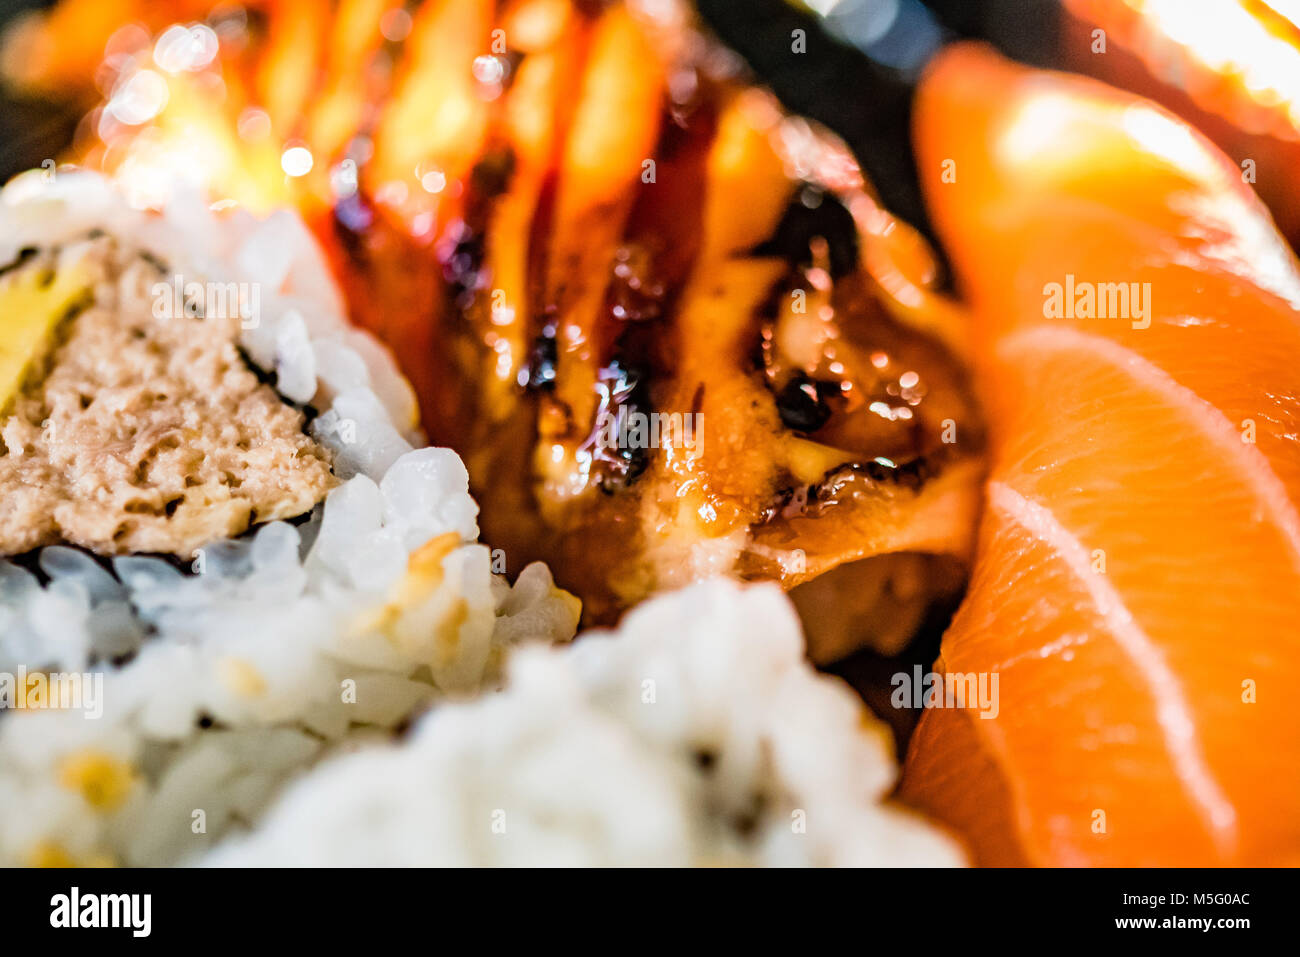 Mezcla de pescado fresco, plato de sushi comida macro fotografía, el enfoque selectivo. La comida japonesa, salmón, caballa, atún, arroz de sushi, rosa, blanco, primer plano. Foto de stock